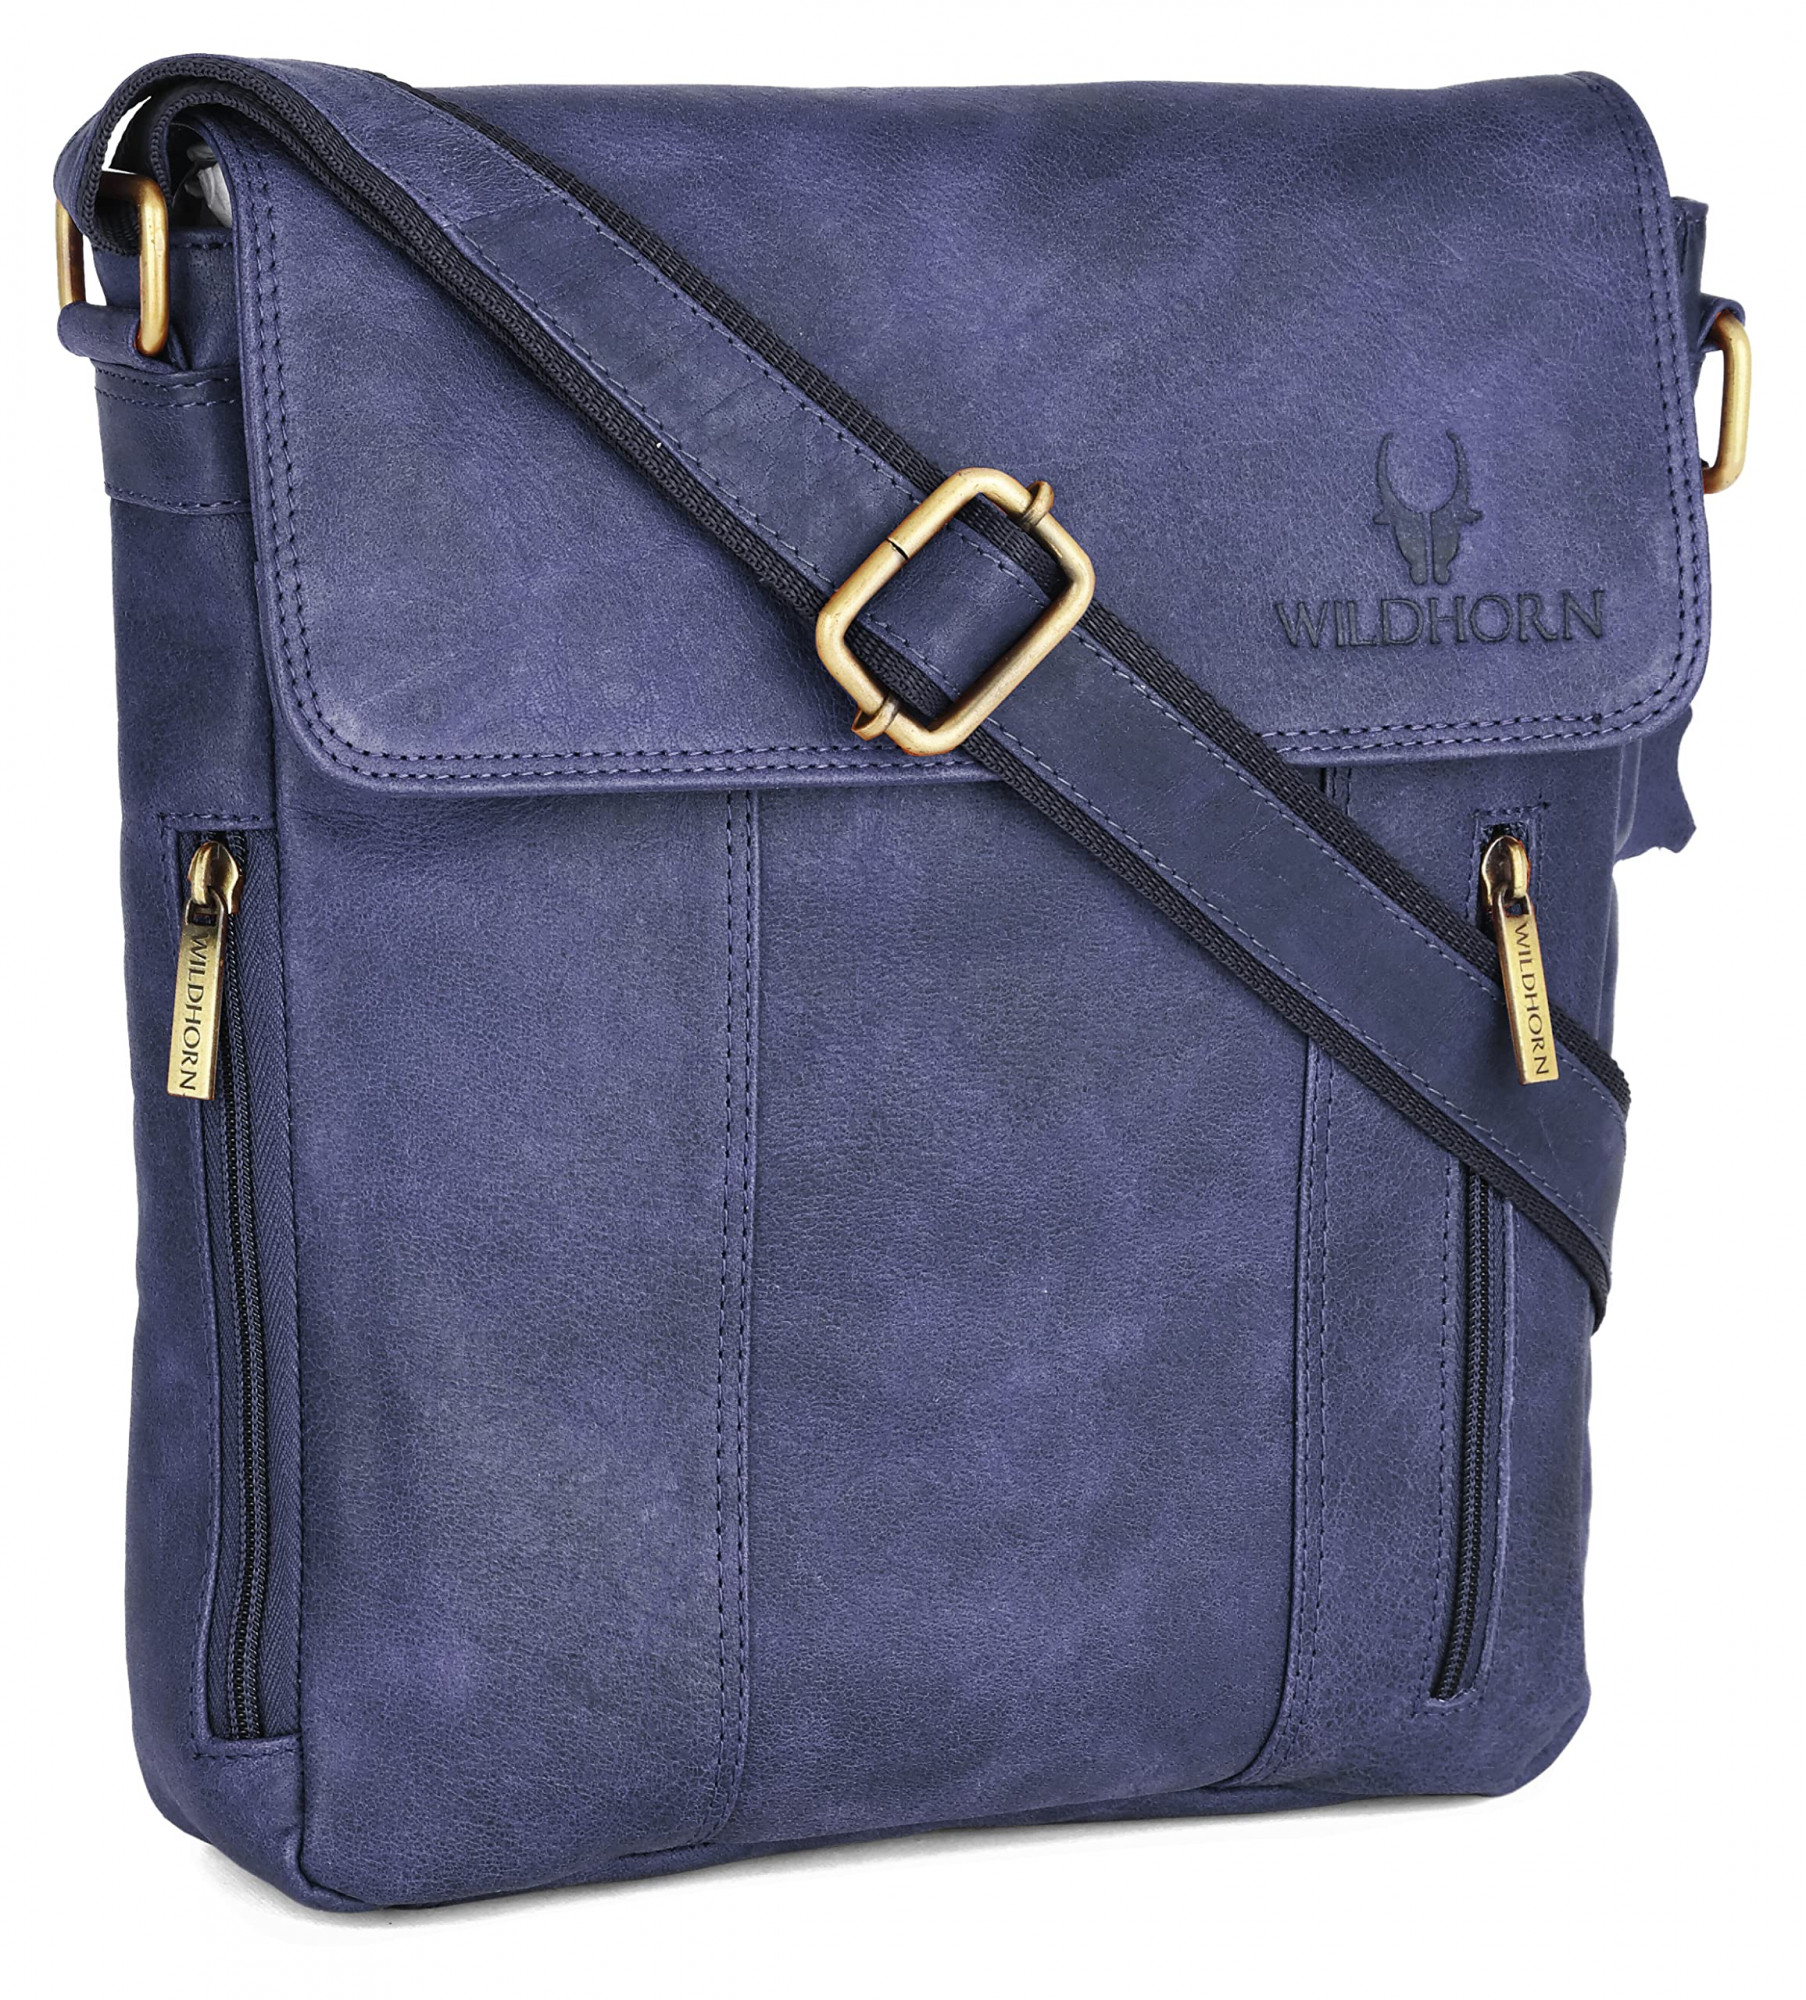 WildHorn Leather 11 inch Sling Messenger Bag for Men I Multipurpose Crossbody Bag I Travel Bag with Adjustable Strap (Distressed Blue)